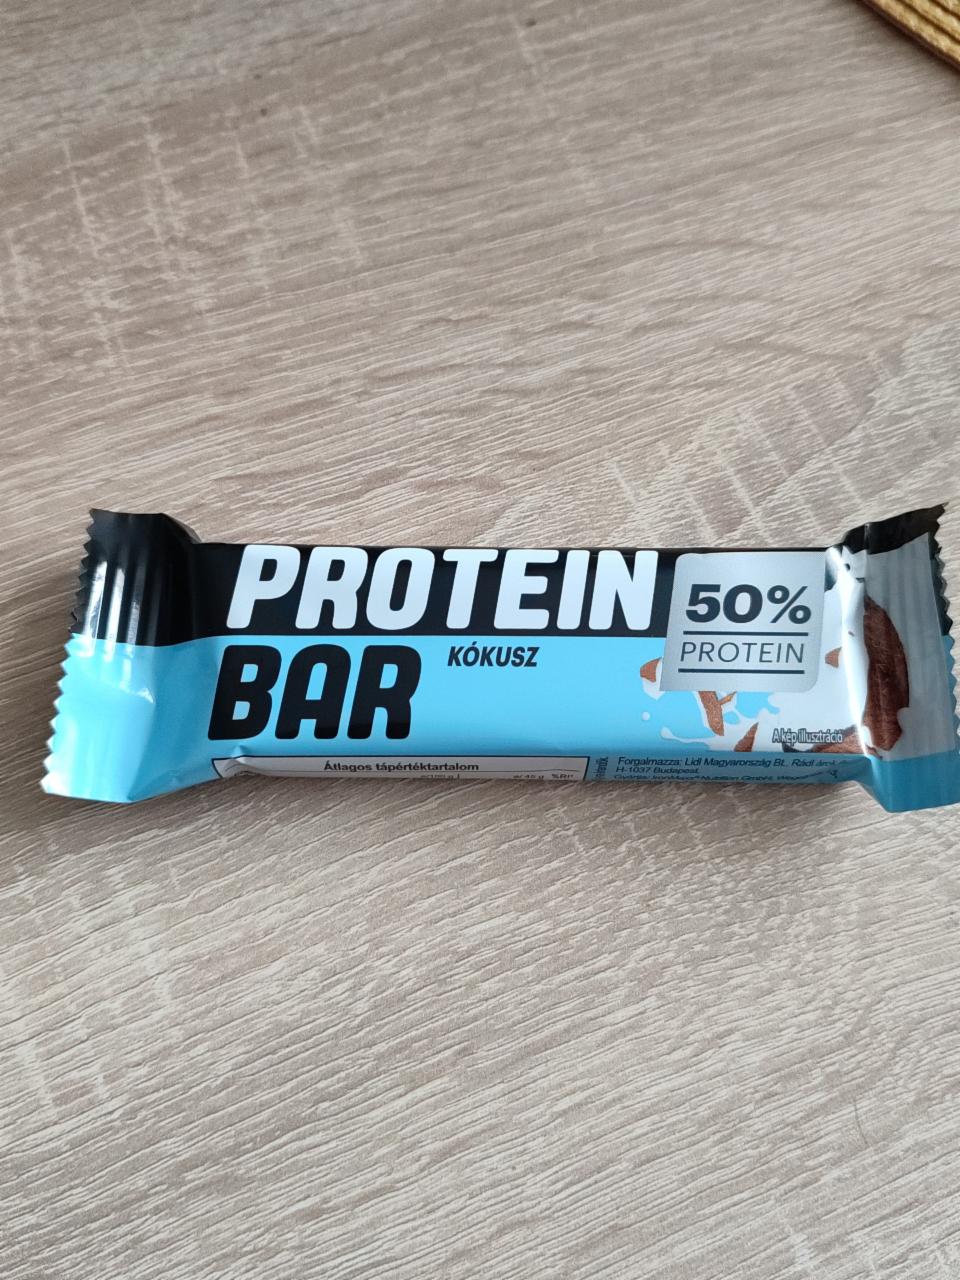 Képek - Protein Bar kókusz 50% IronMaxx